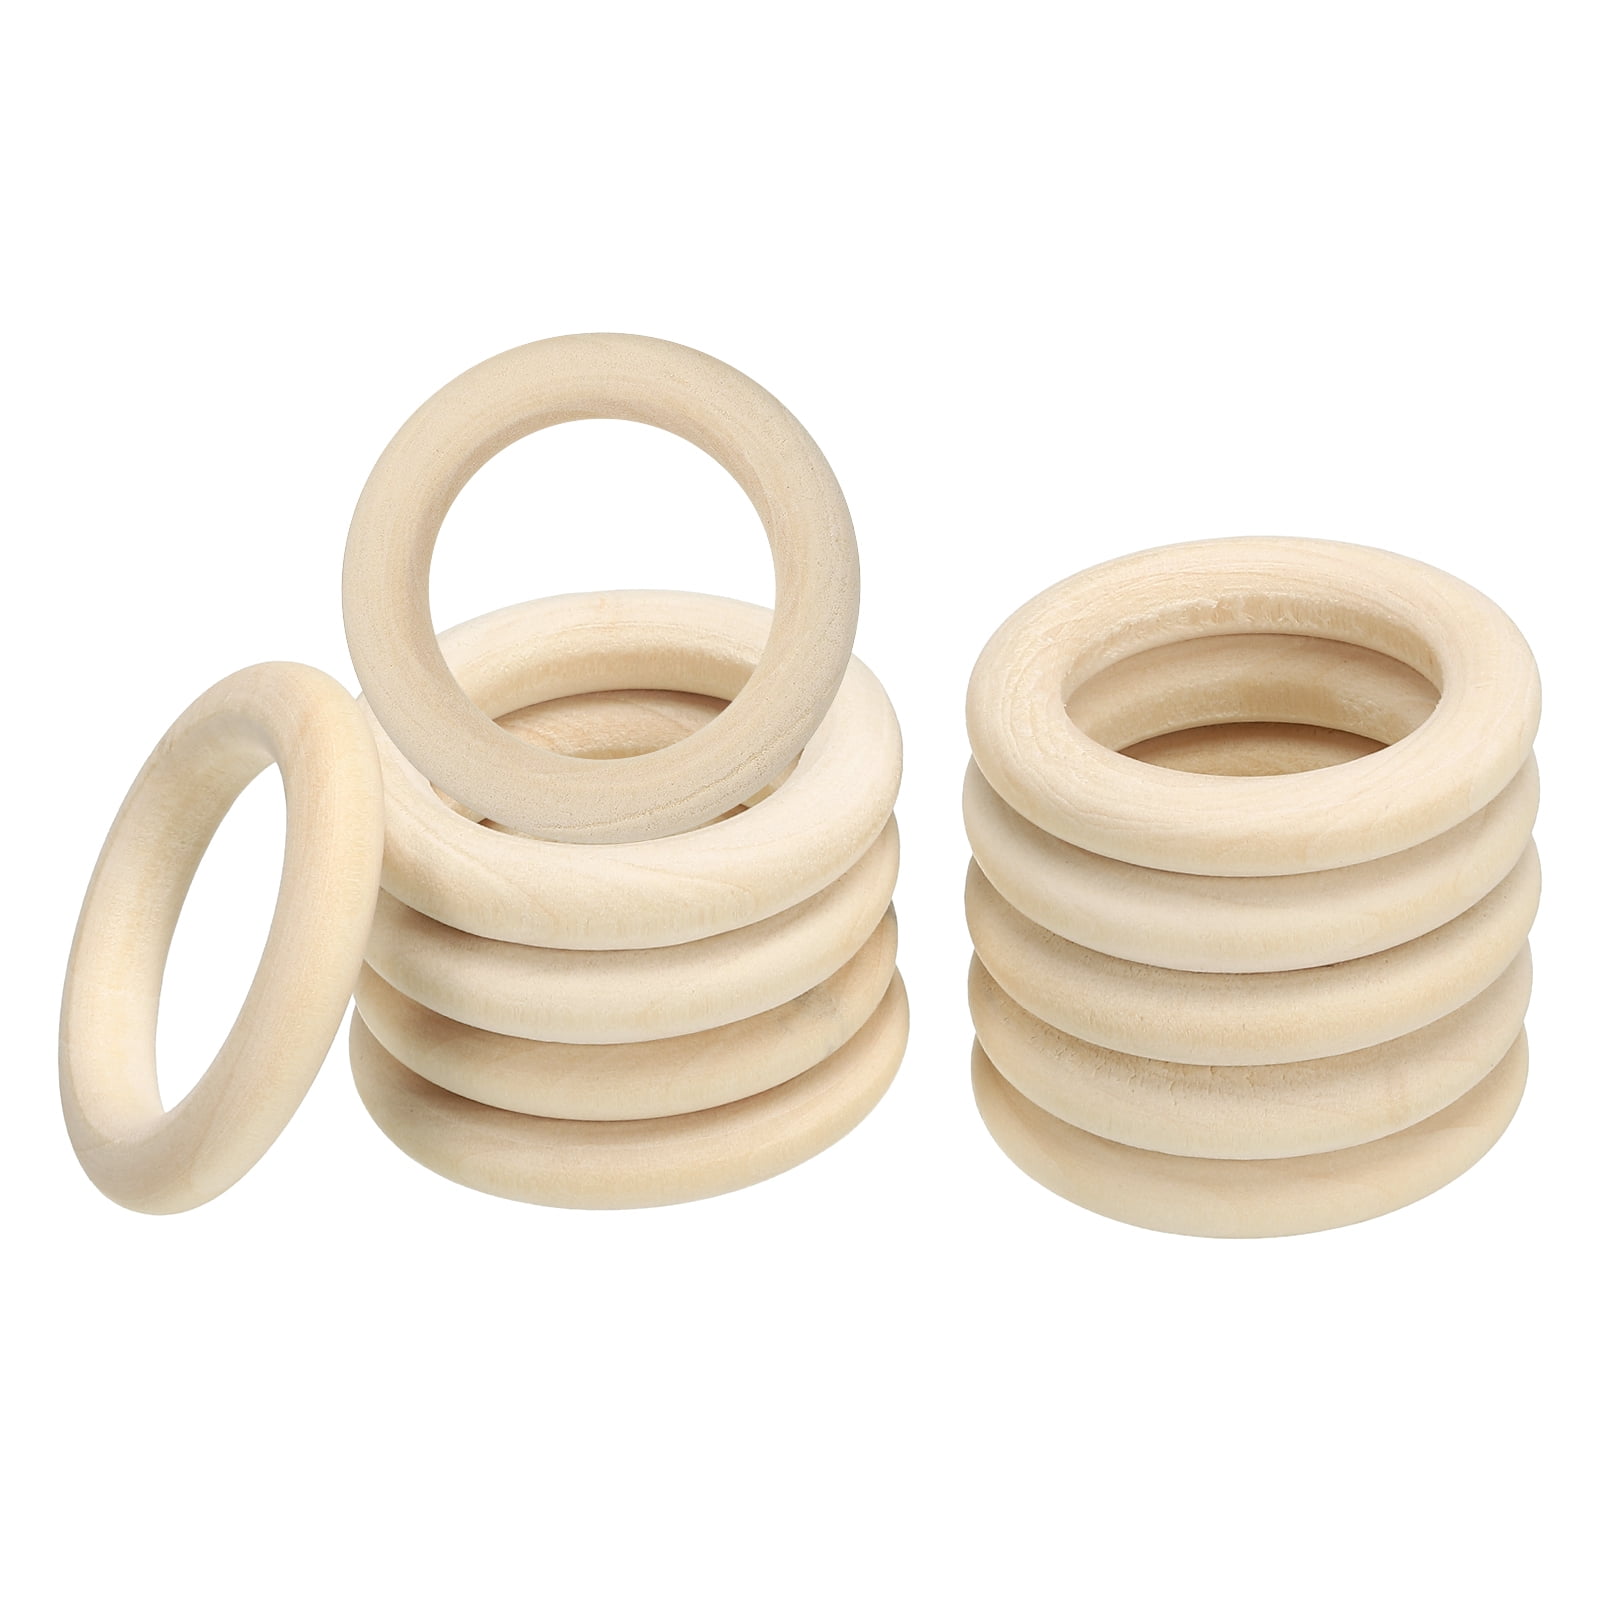 Natural Solid Wooden Ring Wedding DIY Craft Handmade Macrame Cord Round Wood  Hoop Kids Teeth Party